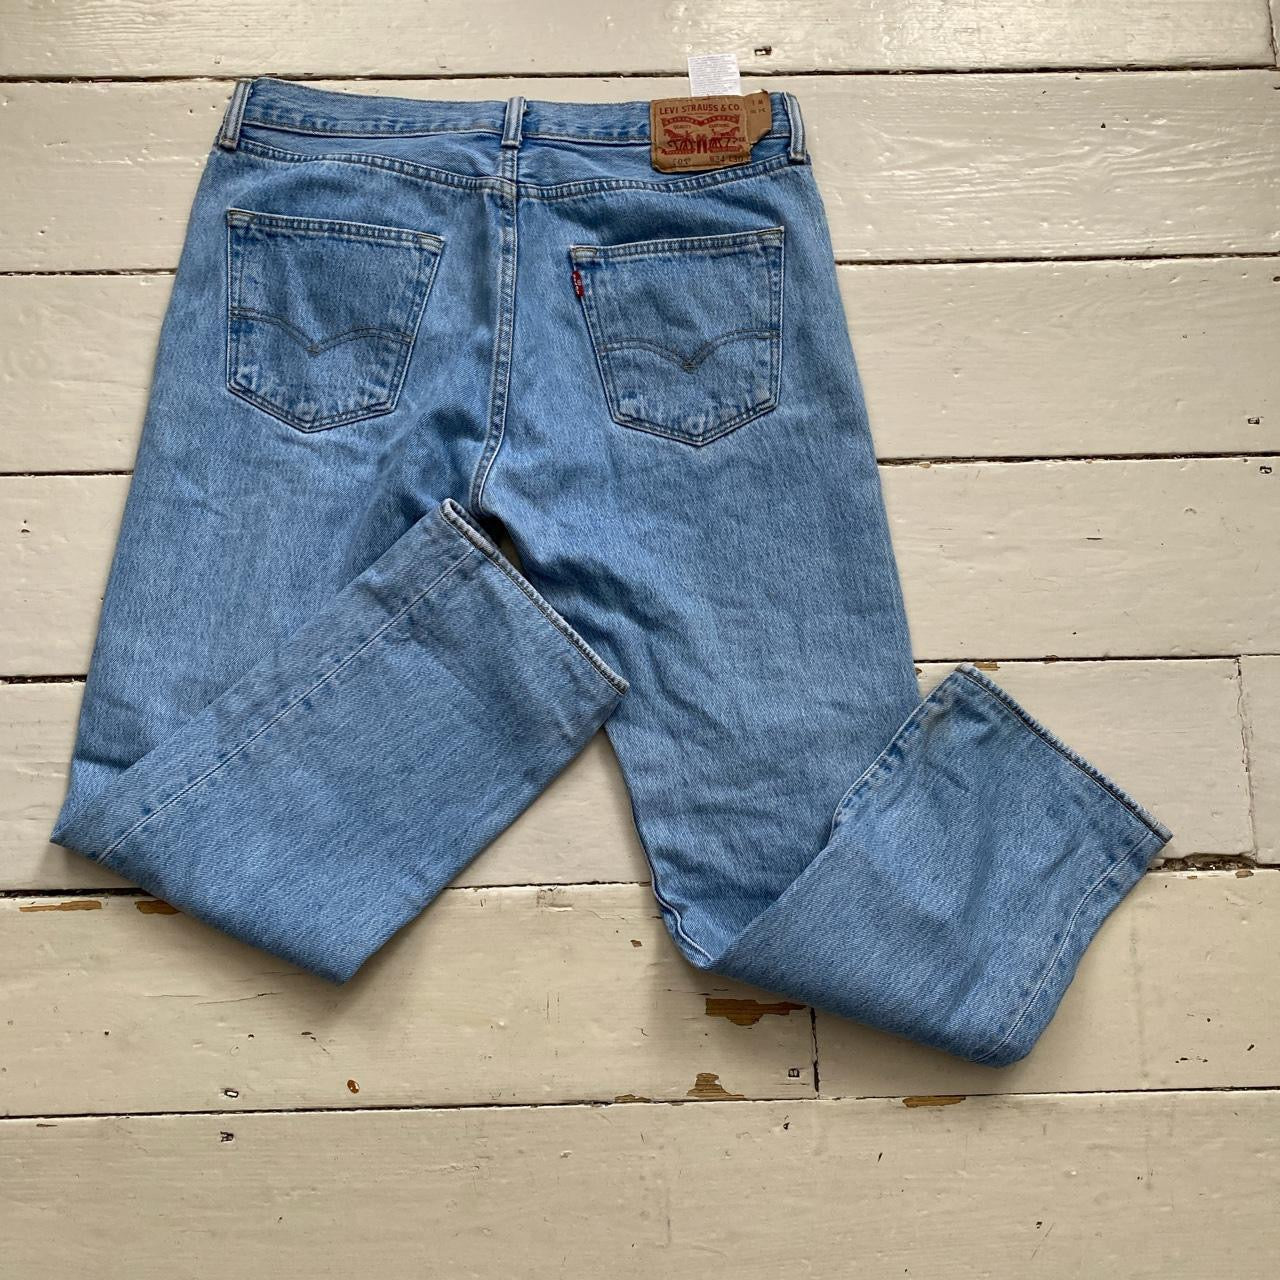 Levis 501 Light Wash Jeans (34/28)